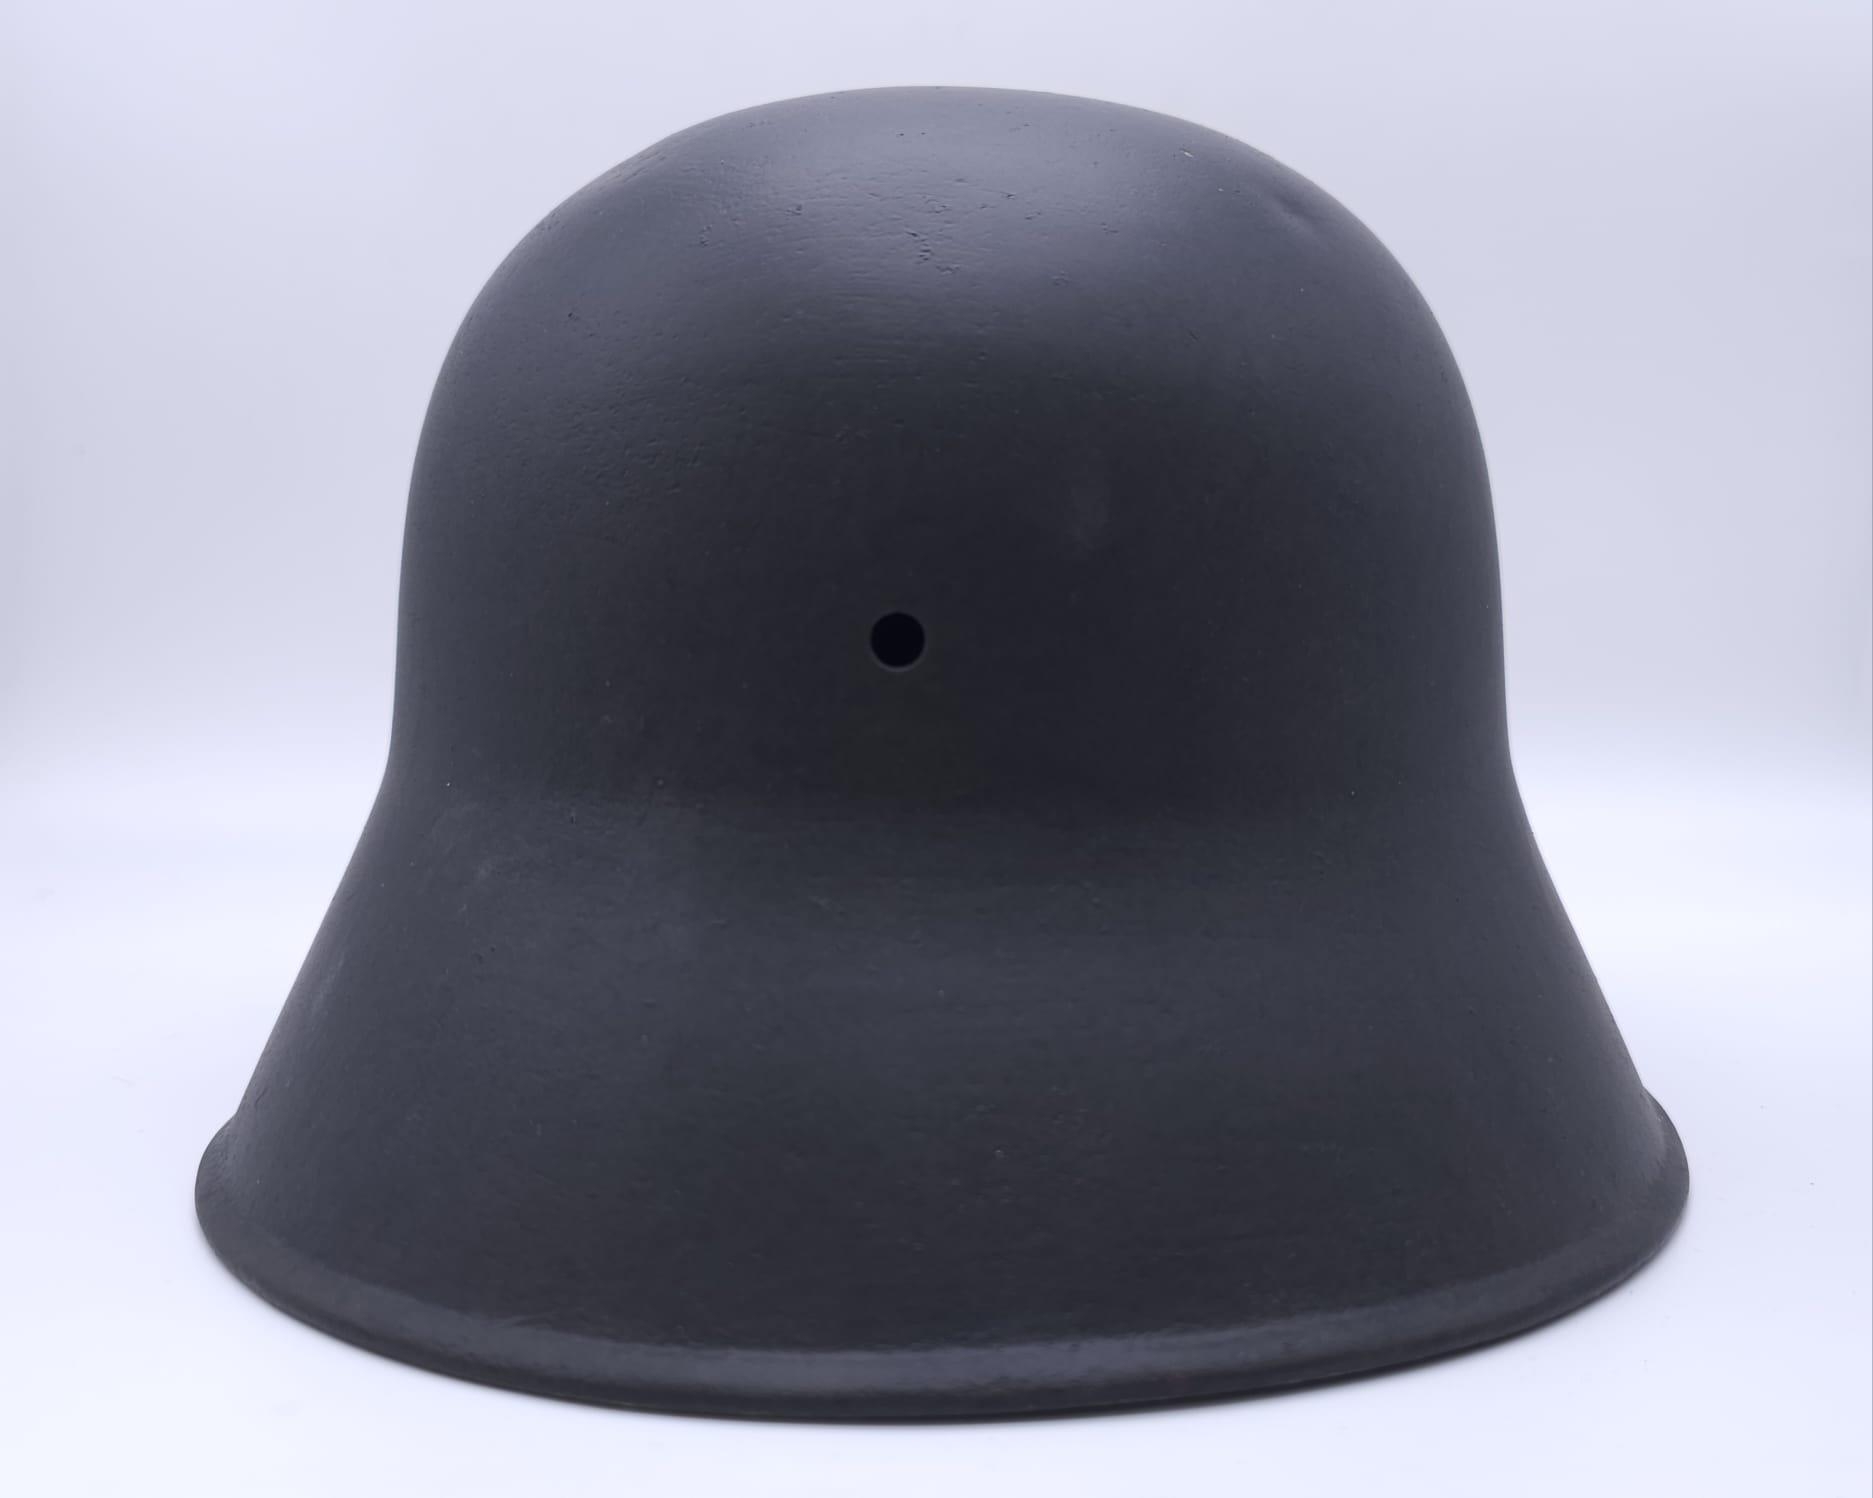 WW1 German Memorial Helmet. Original WW1 German Stahlhelm helmet with post ..War memorial painting. - Image 5 of 7